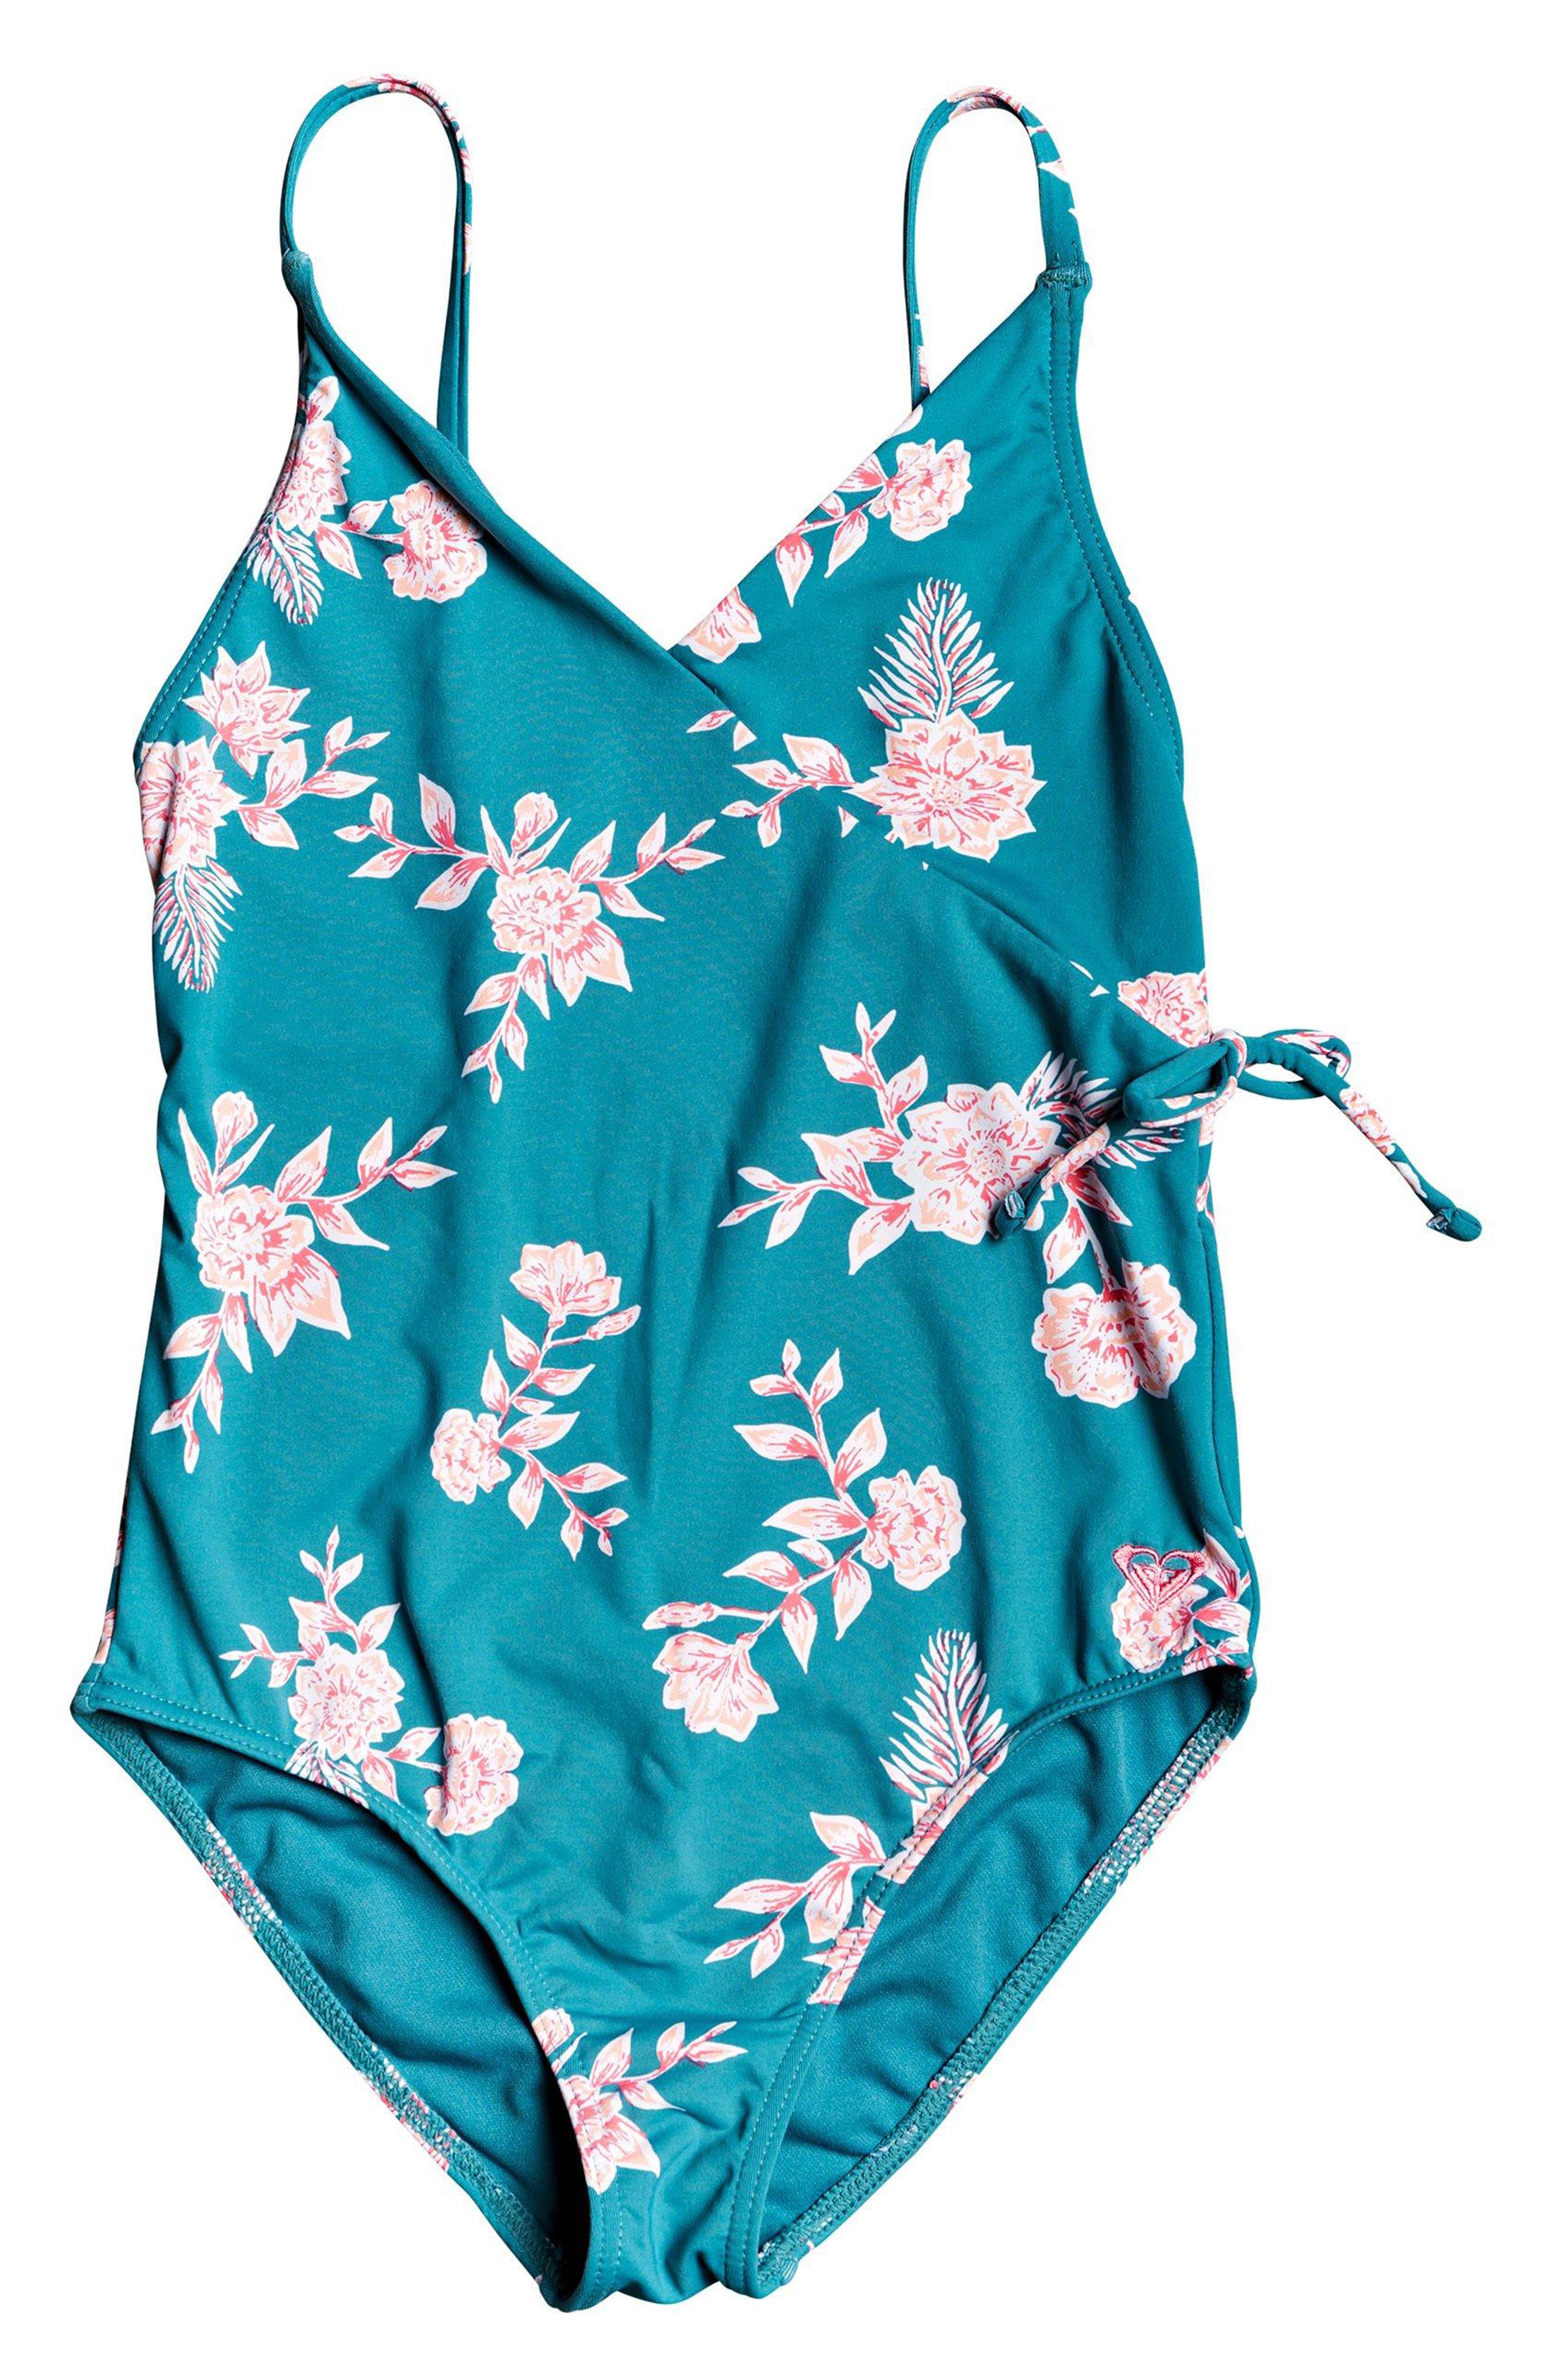 Roxy Kids - Girls' Swimwear and Beachwear